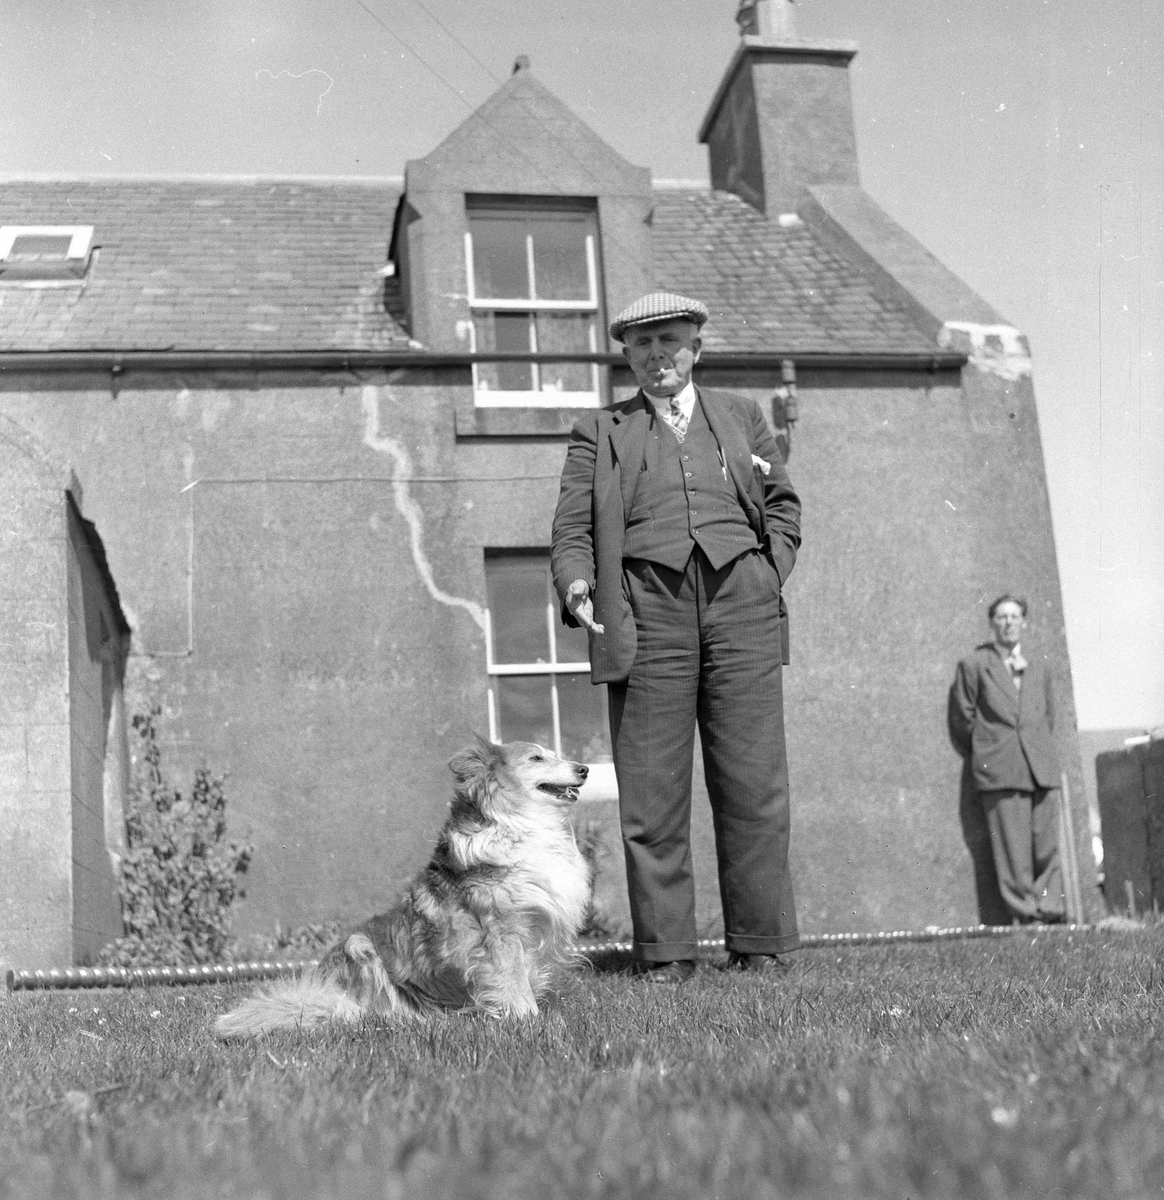 Pigghåfiske på Shetland.
Shetland, 14-22. mai 1958, mann med hund, bebyggelse i bakgrunn.